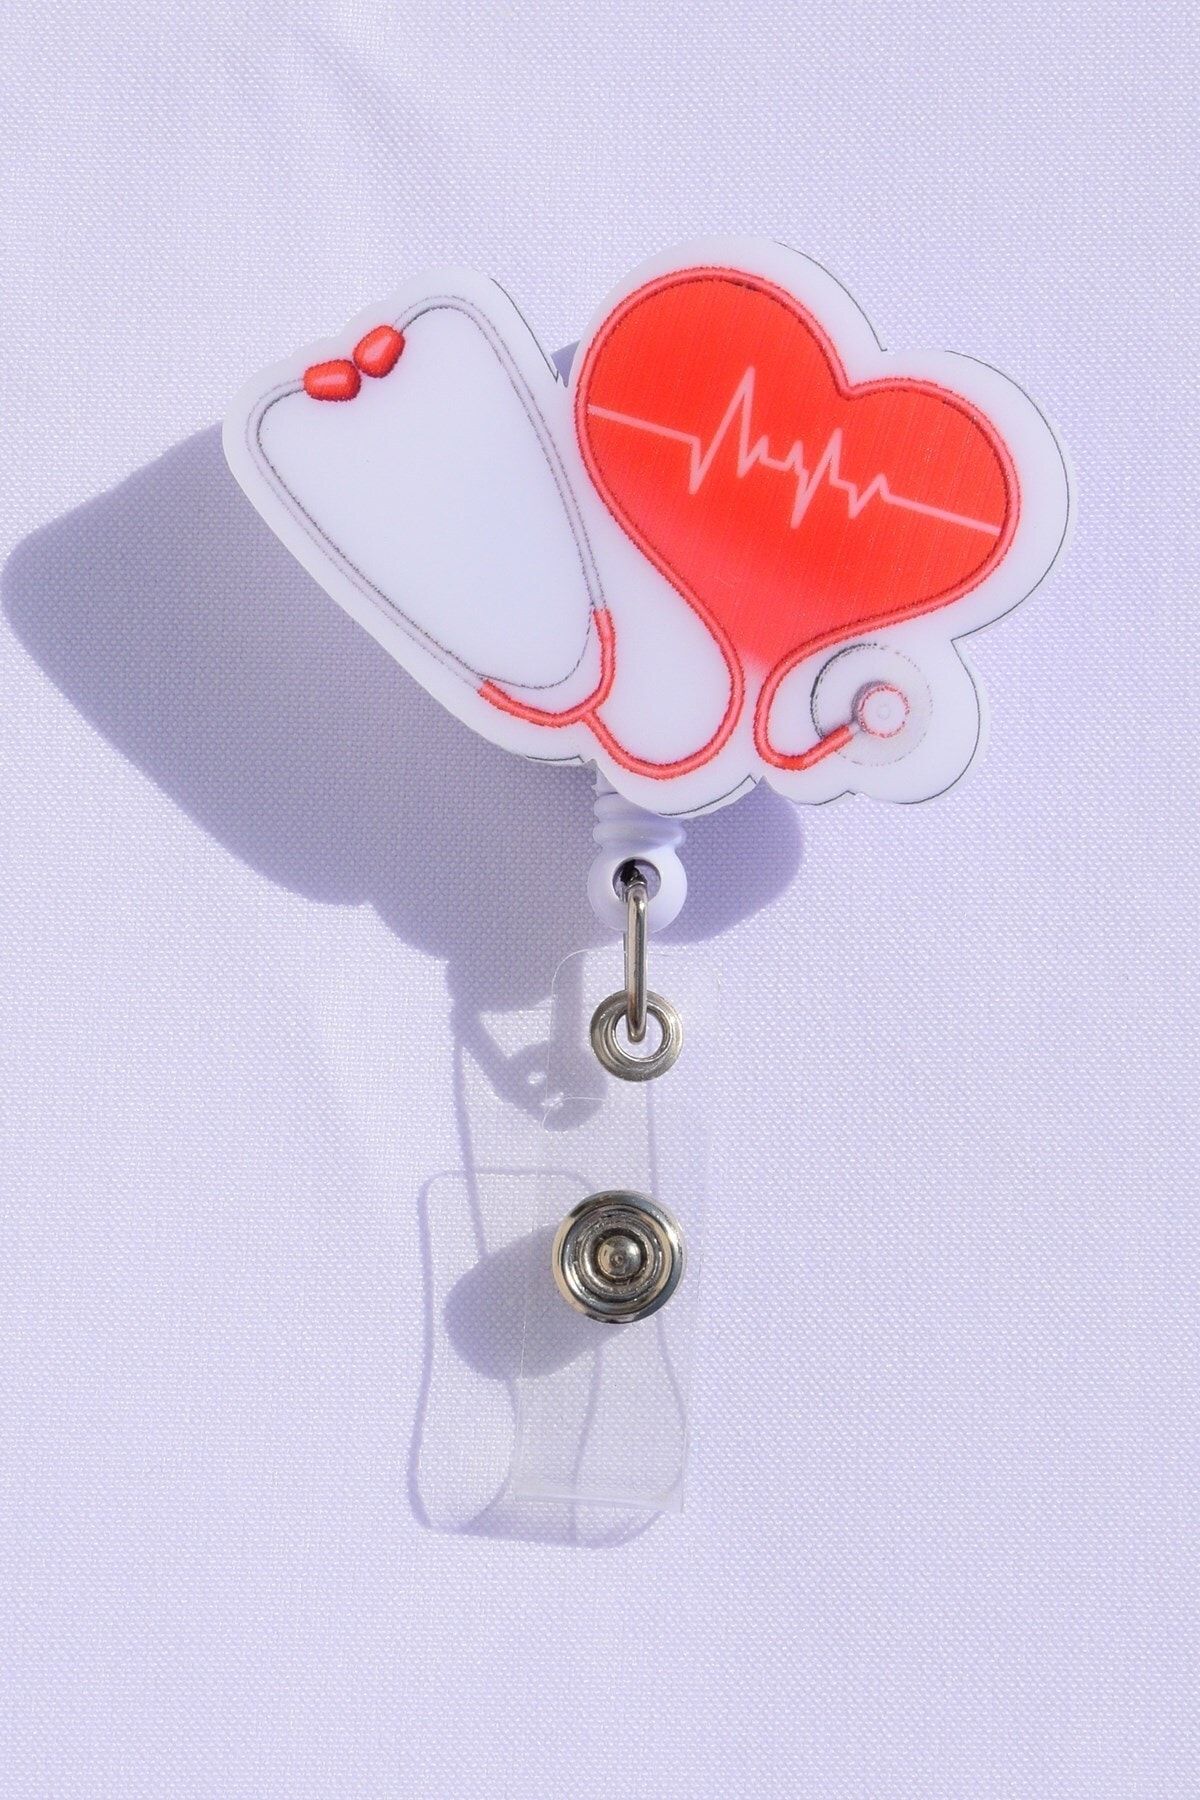 Nur Medikal Giyim Steteskop Kalp Desenli Yoyo Yaka Kartlığı